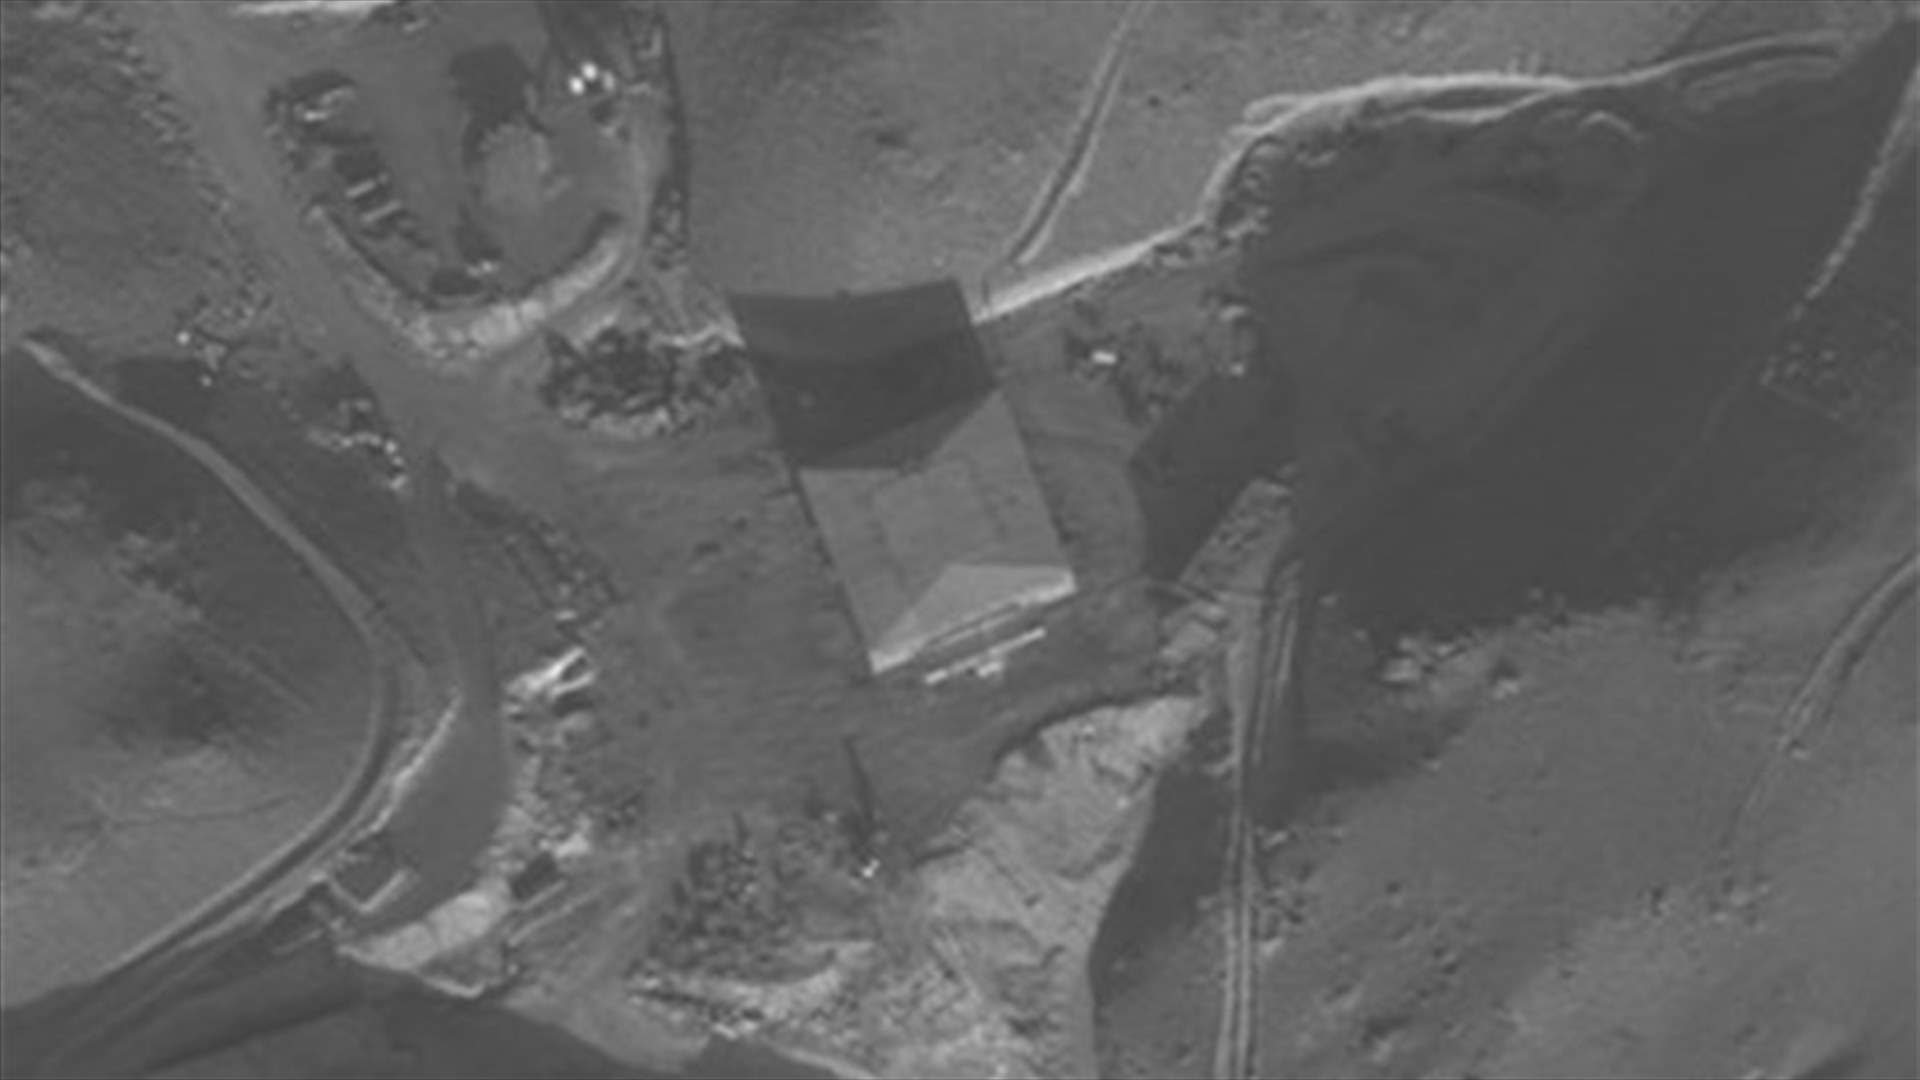 بالصور والفيديو- إسرائيل تعترف رسميا بتدمير مفاعل نووي في دير الزور عام 2007